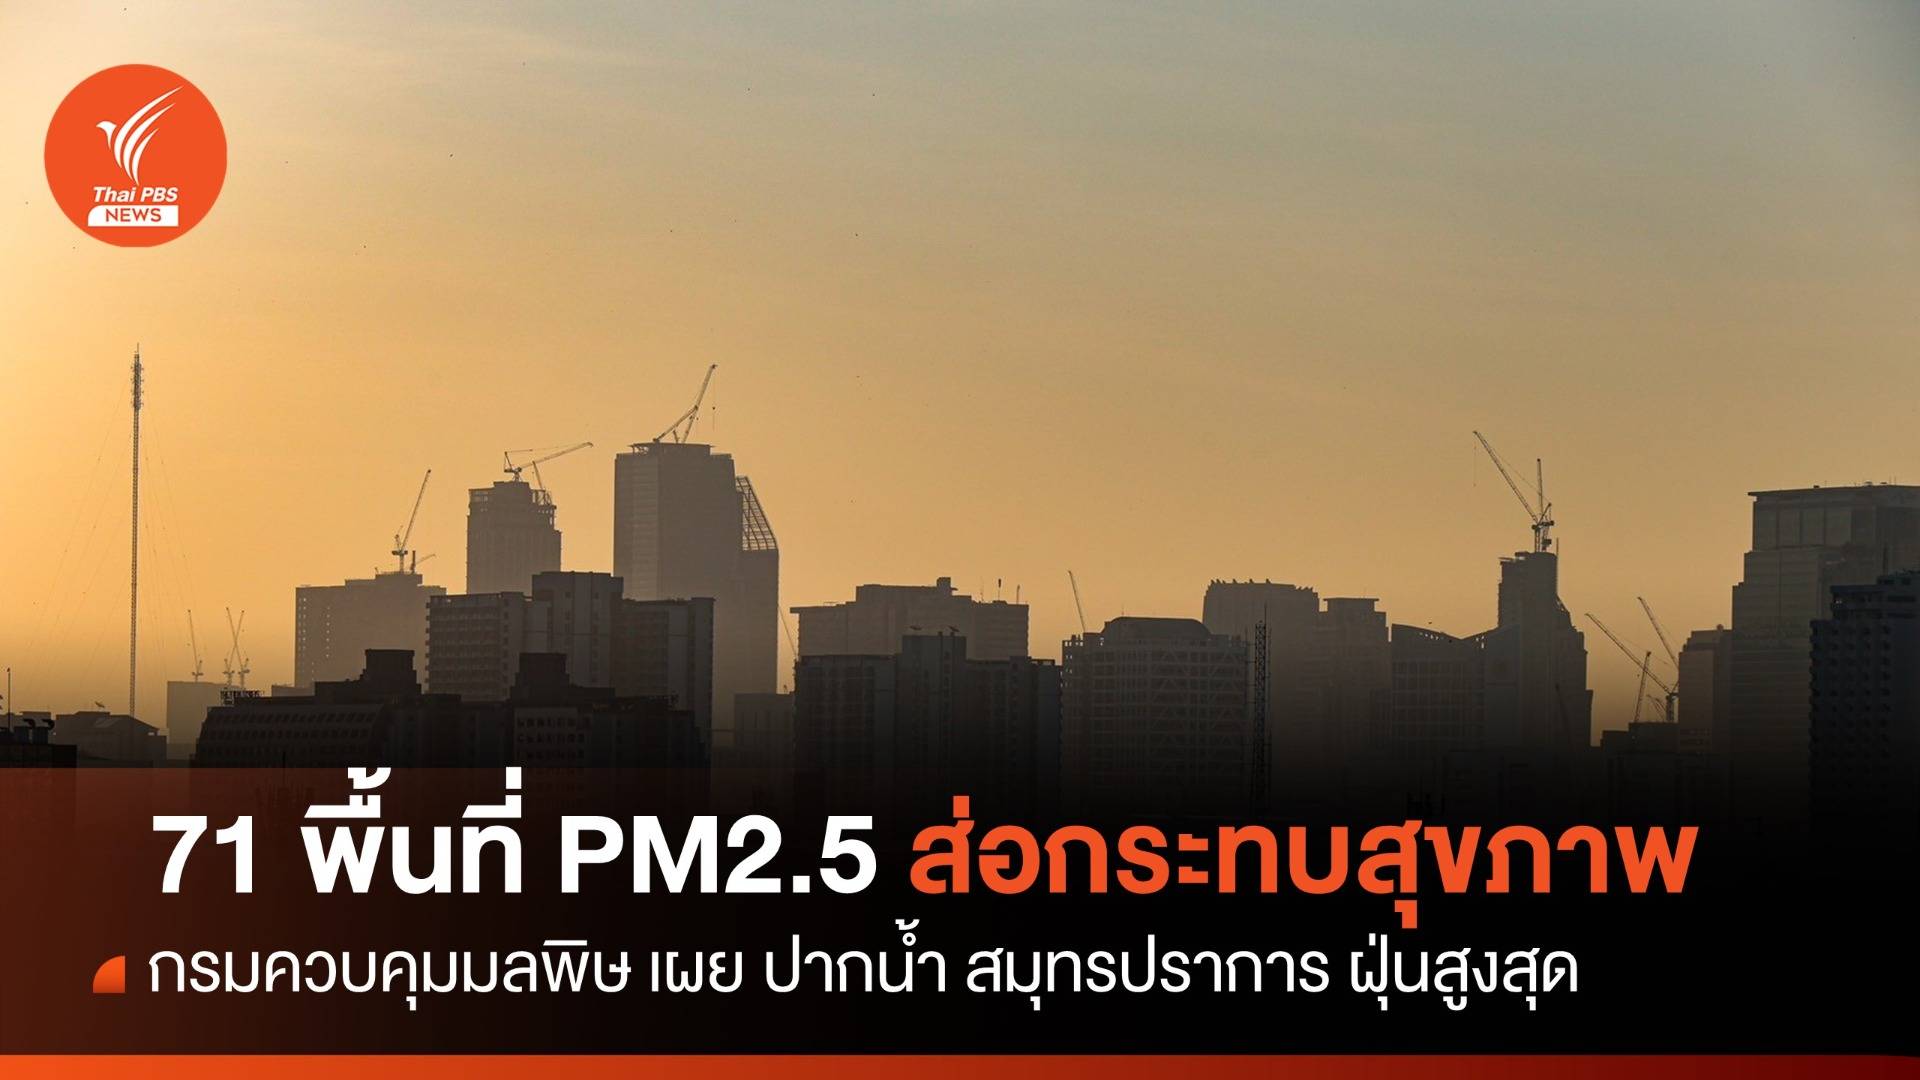 ระลอกใหม่! ฝุ่น PM2.5 เกิน 71 พื้นที่เริ่มมีผลต่อสุขภาพ 